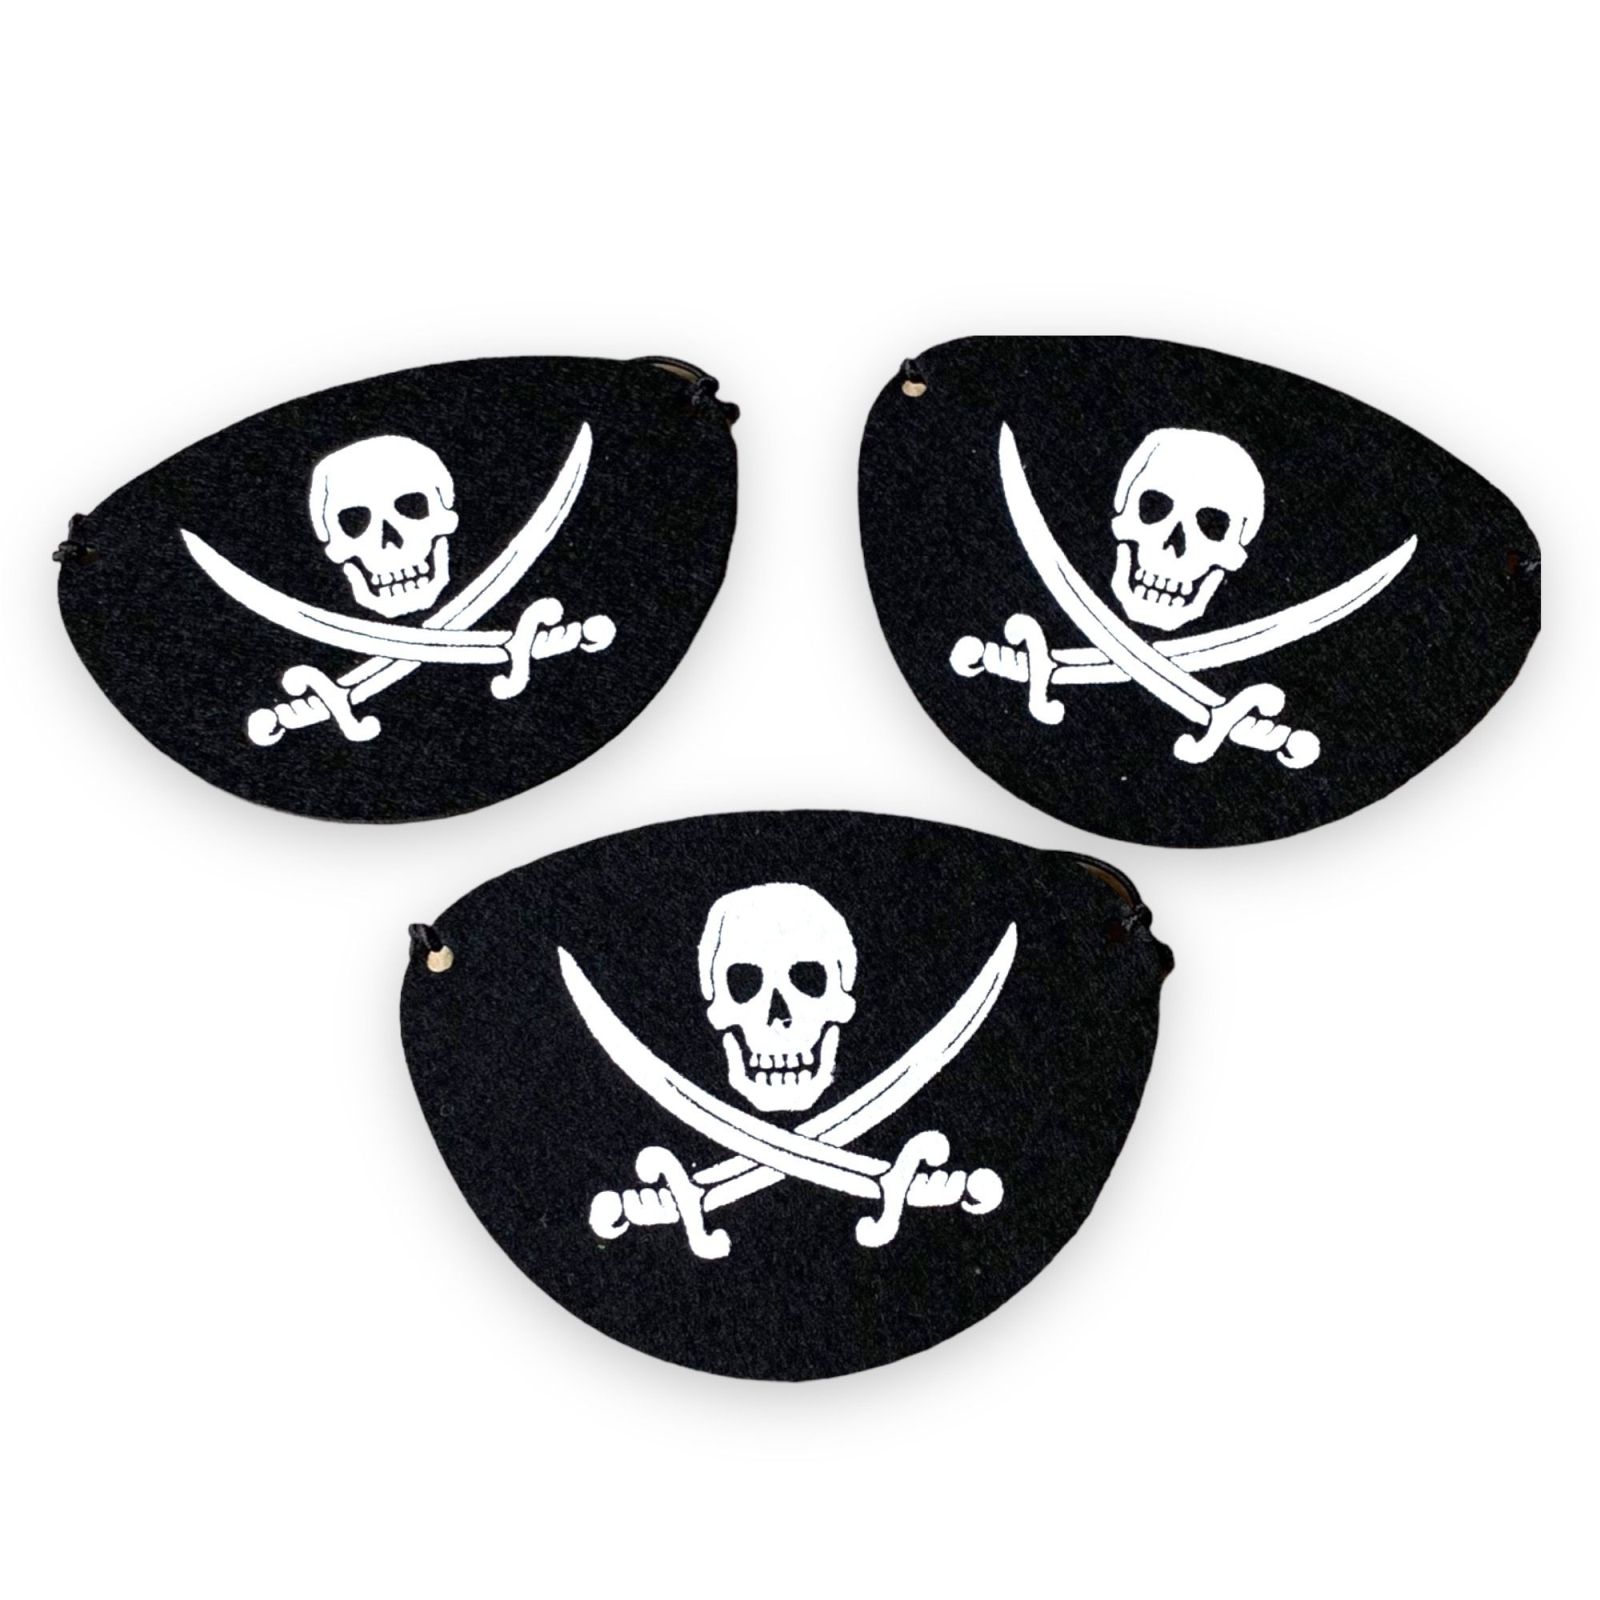 Pirat Piraten Flagge, Fahne mit Totenkopf zerfetzt für Piratenparty, Piraten, Mottoparty